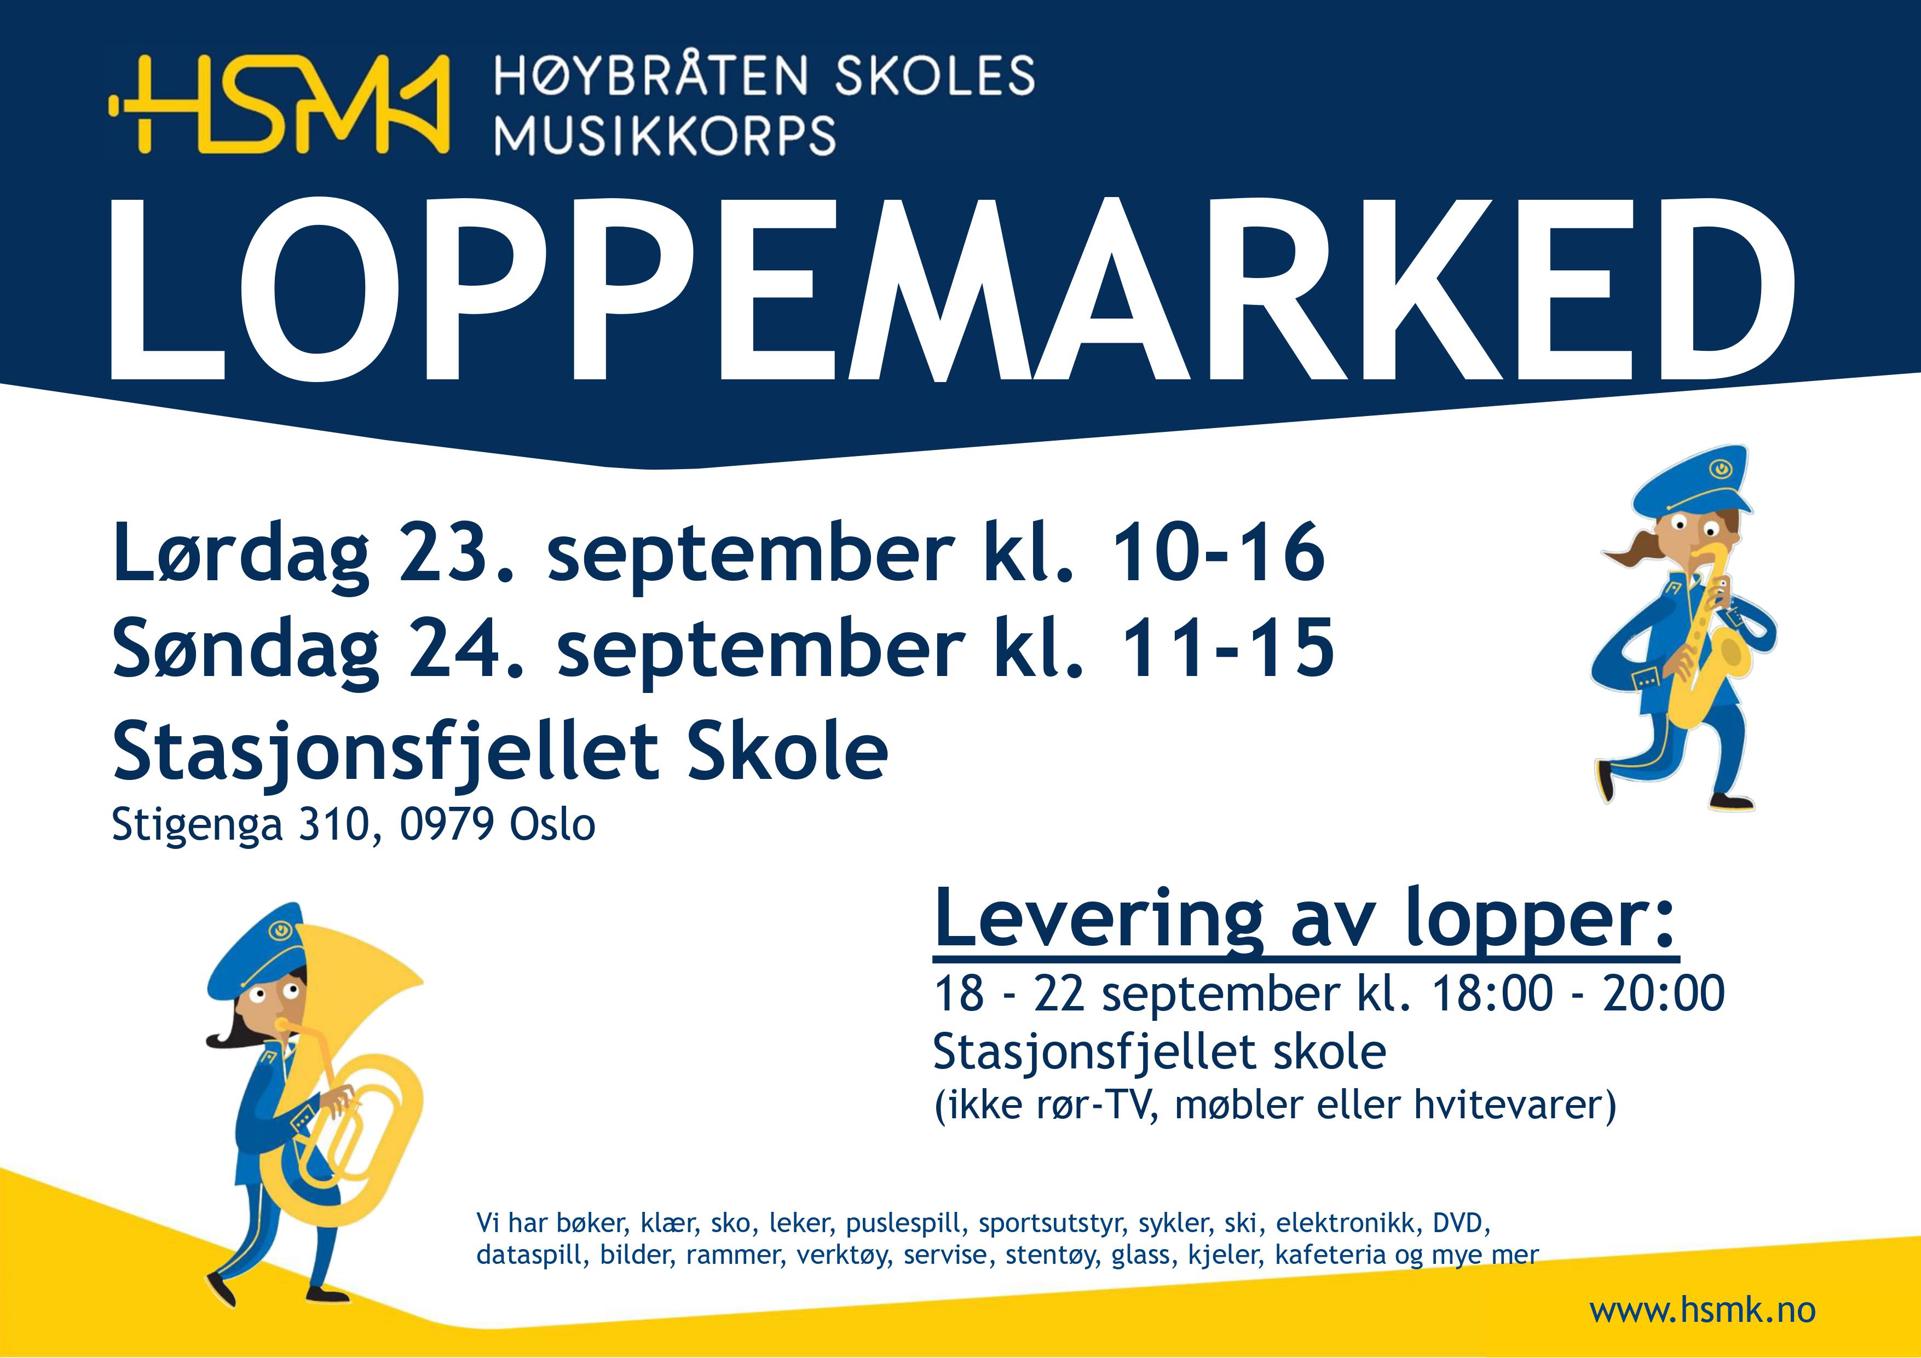 HSMK Loppemarked liggende 2023-09.jpg